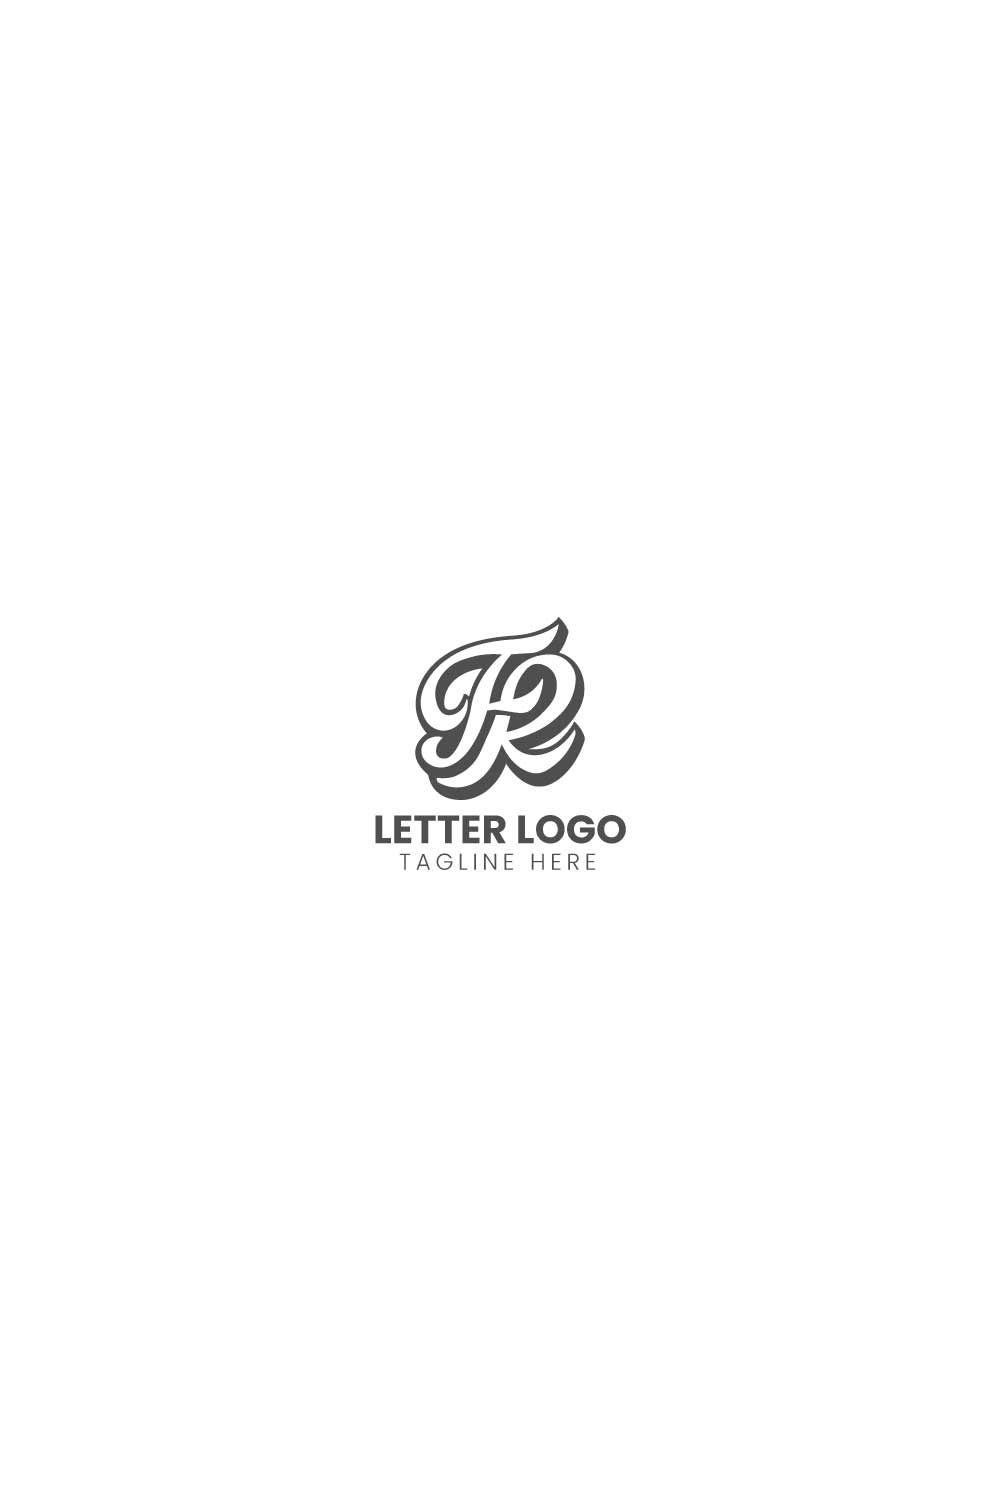 letter logo pint dff 812